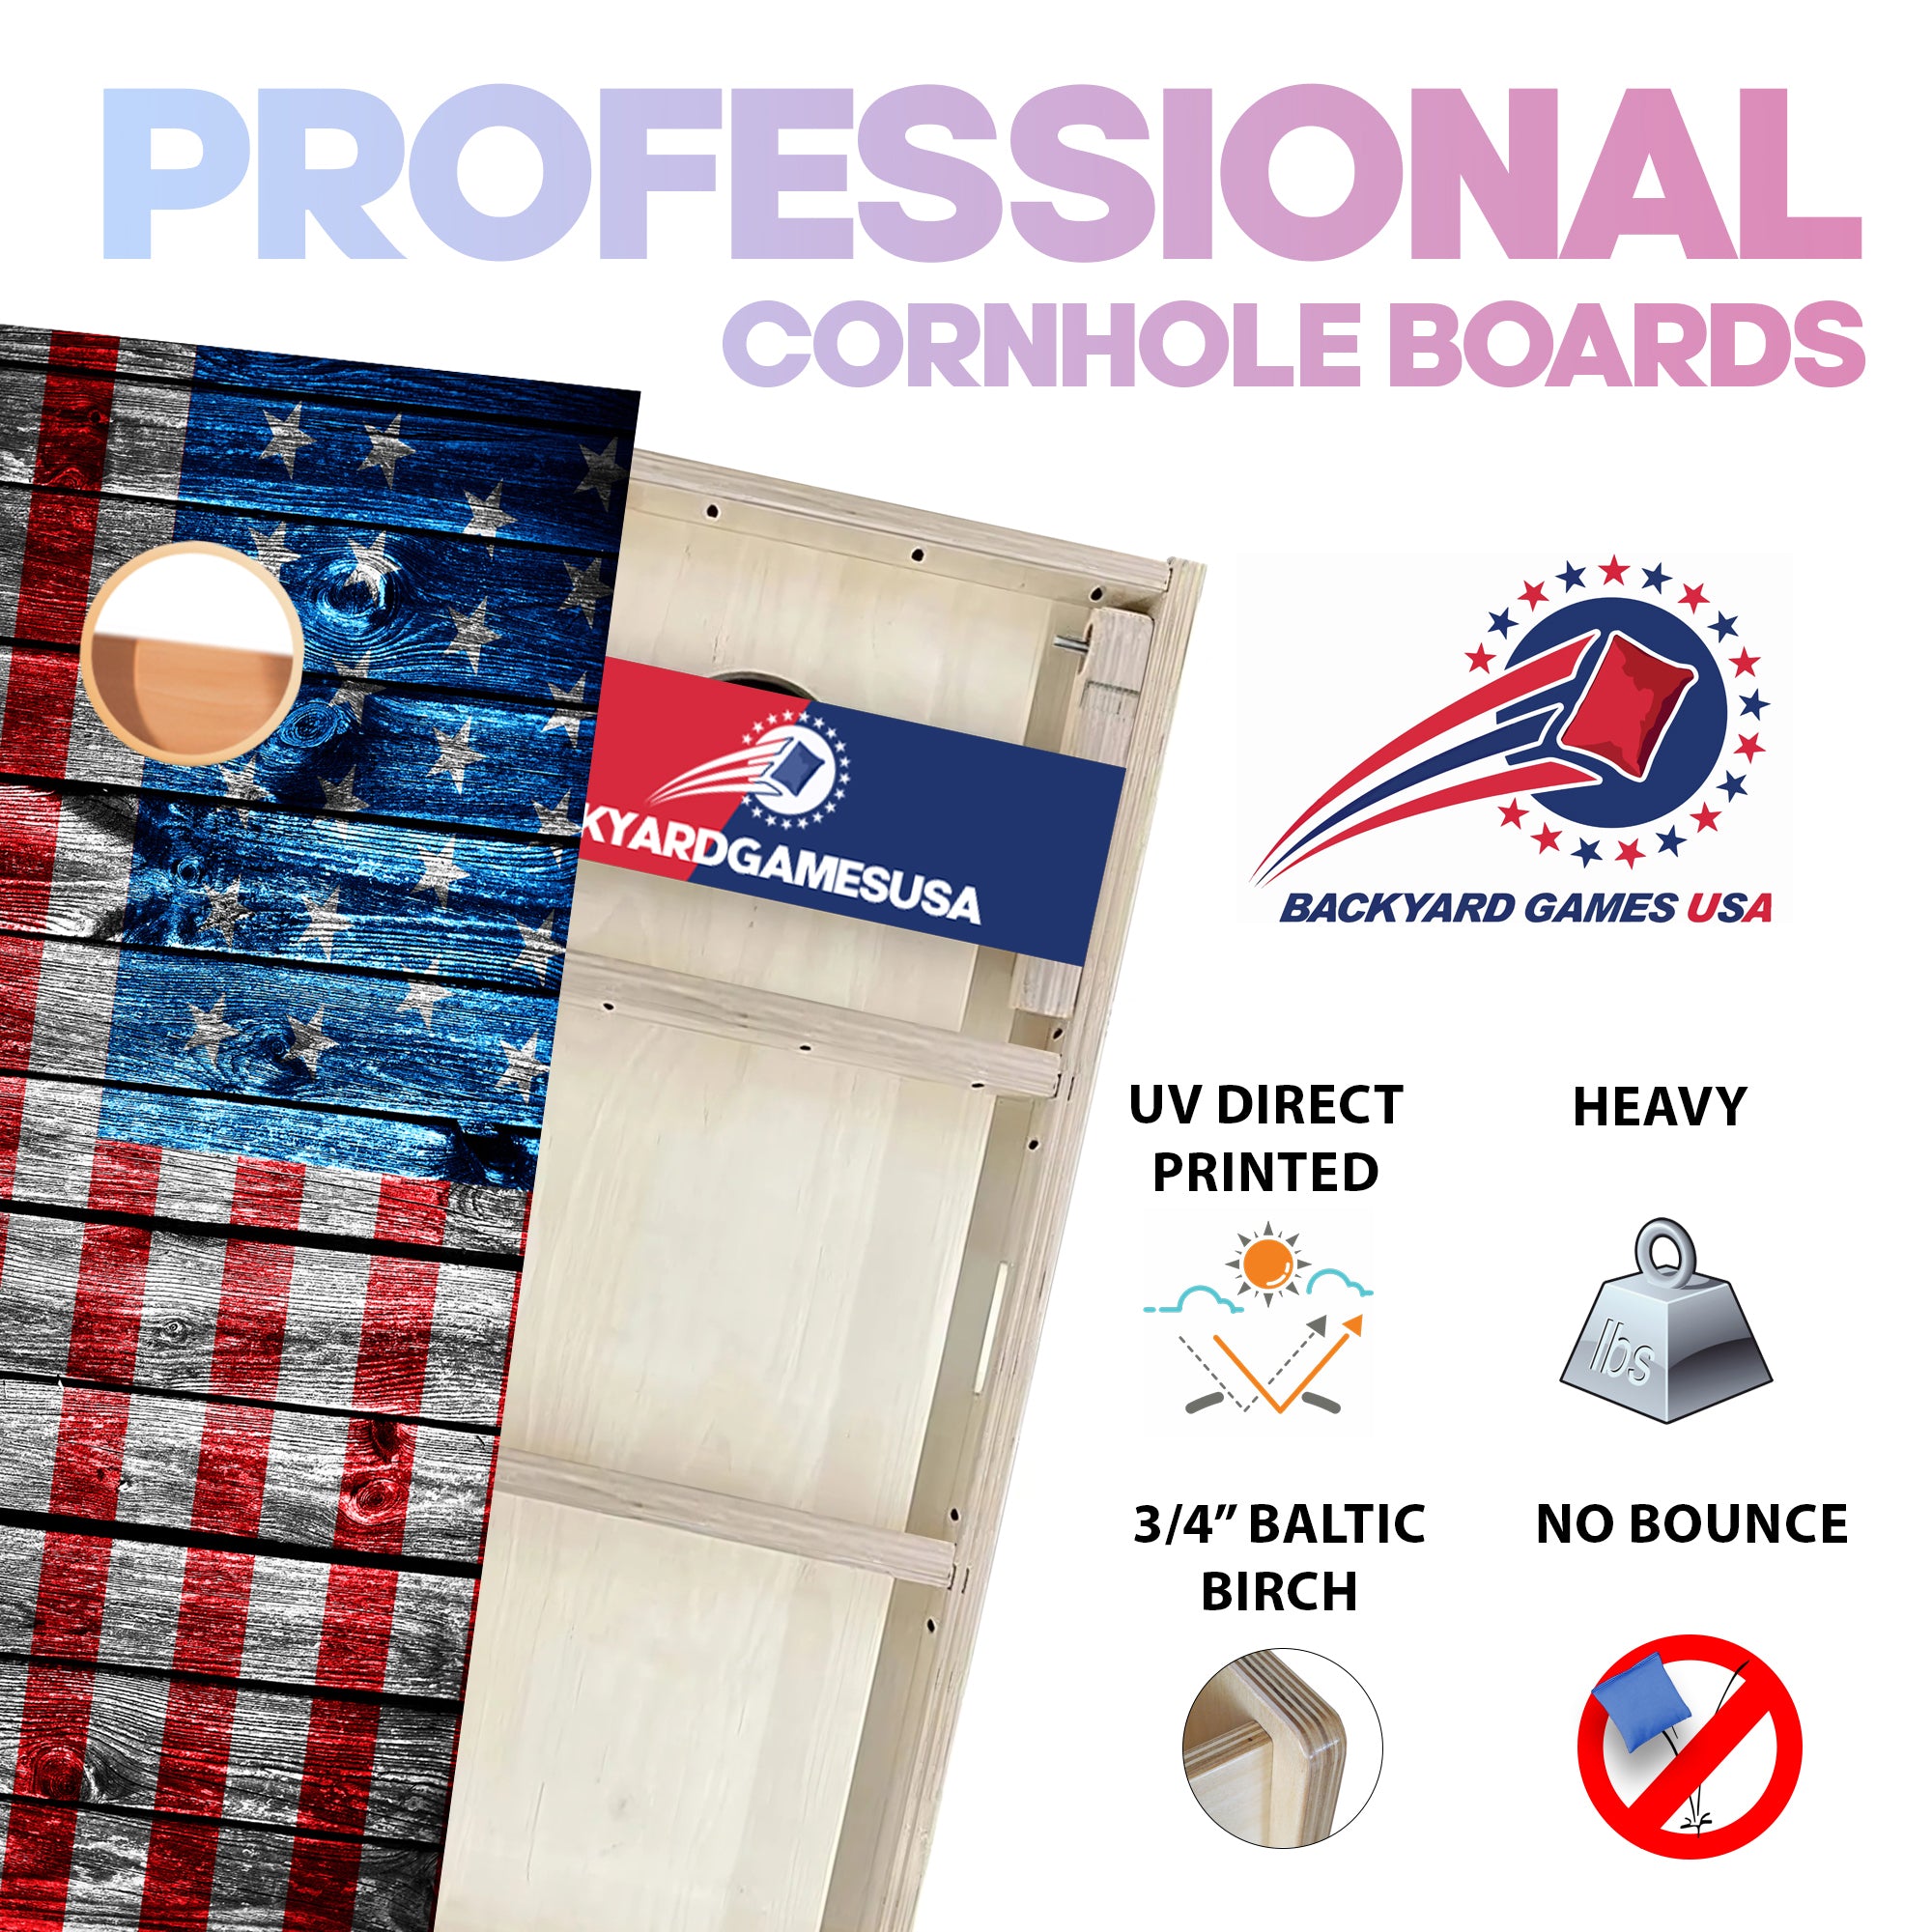 Sideway Wooden Panel Professional Cornhole Boards